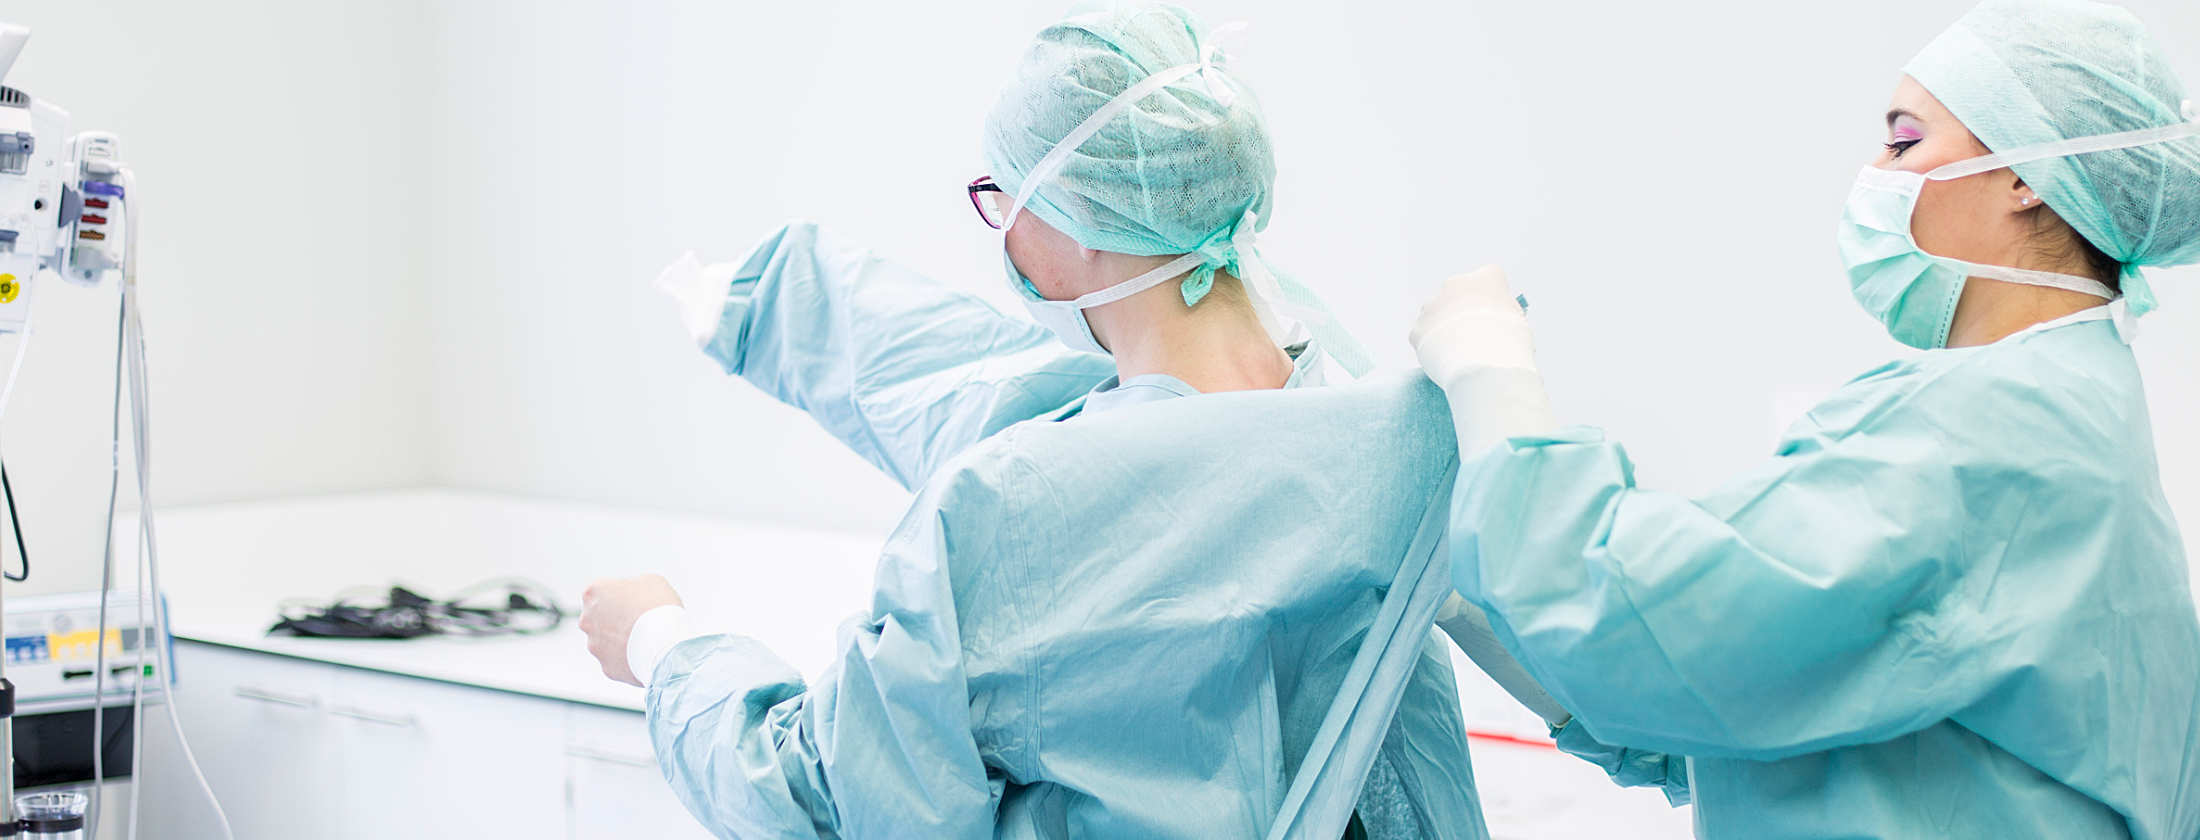 Fachärztin für Gynäkologie und Fachärztin für Urologie und Andrologie vor einem chirurgischen Eingriff. Vor der Operation kleiden sich die Ärztinnen in hygienisch saubere OP- Berufsbekleidung. Sie helfen sich gegenseitig die OP-Kittel überzuziehen.